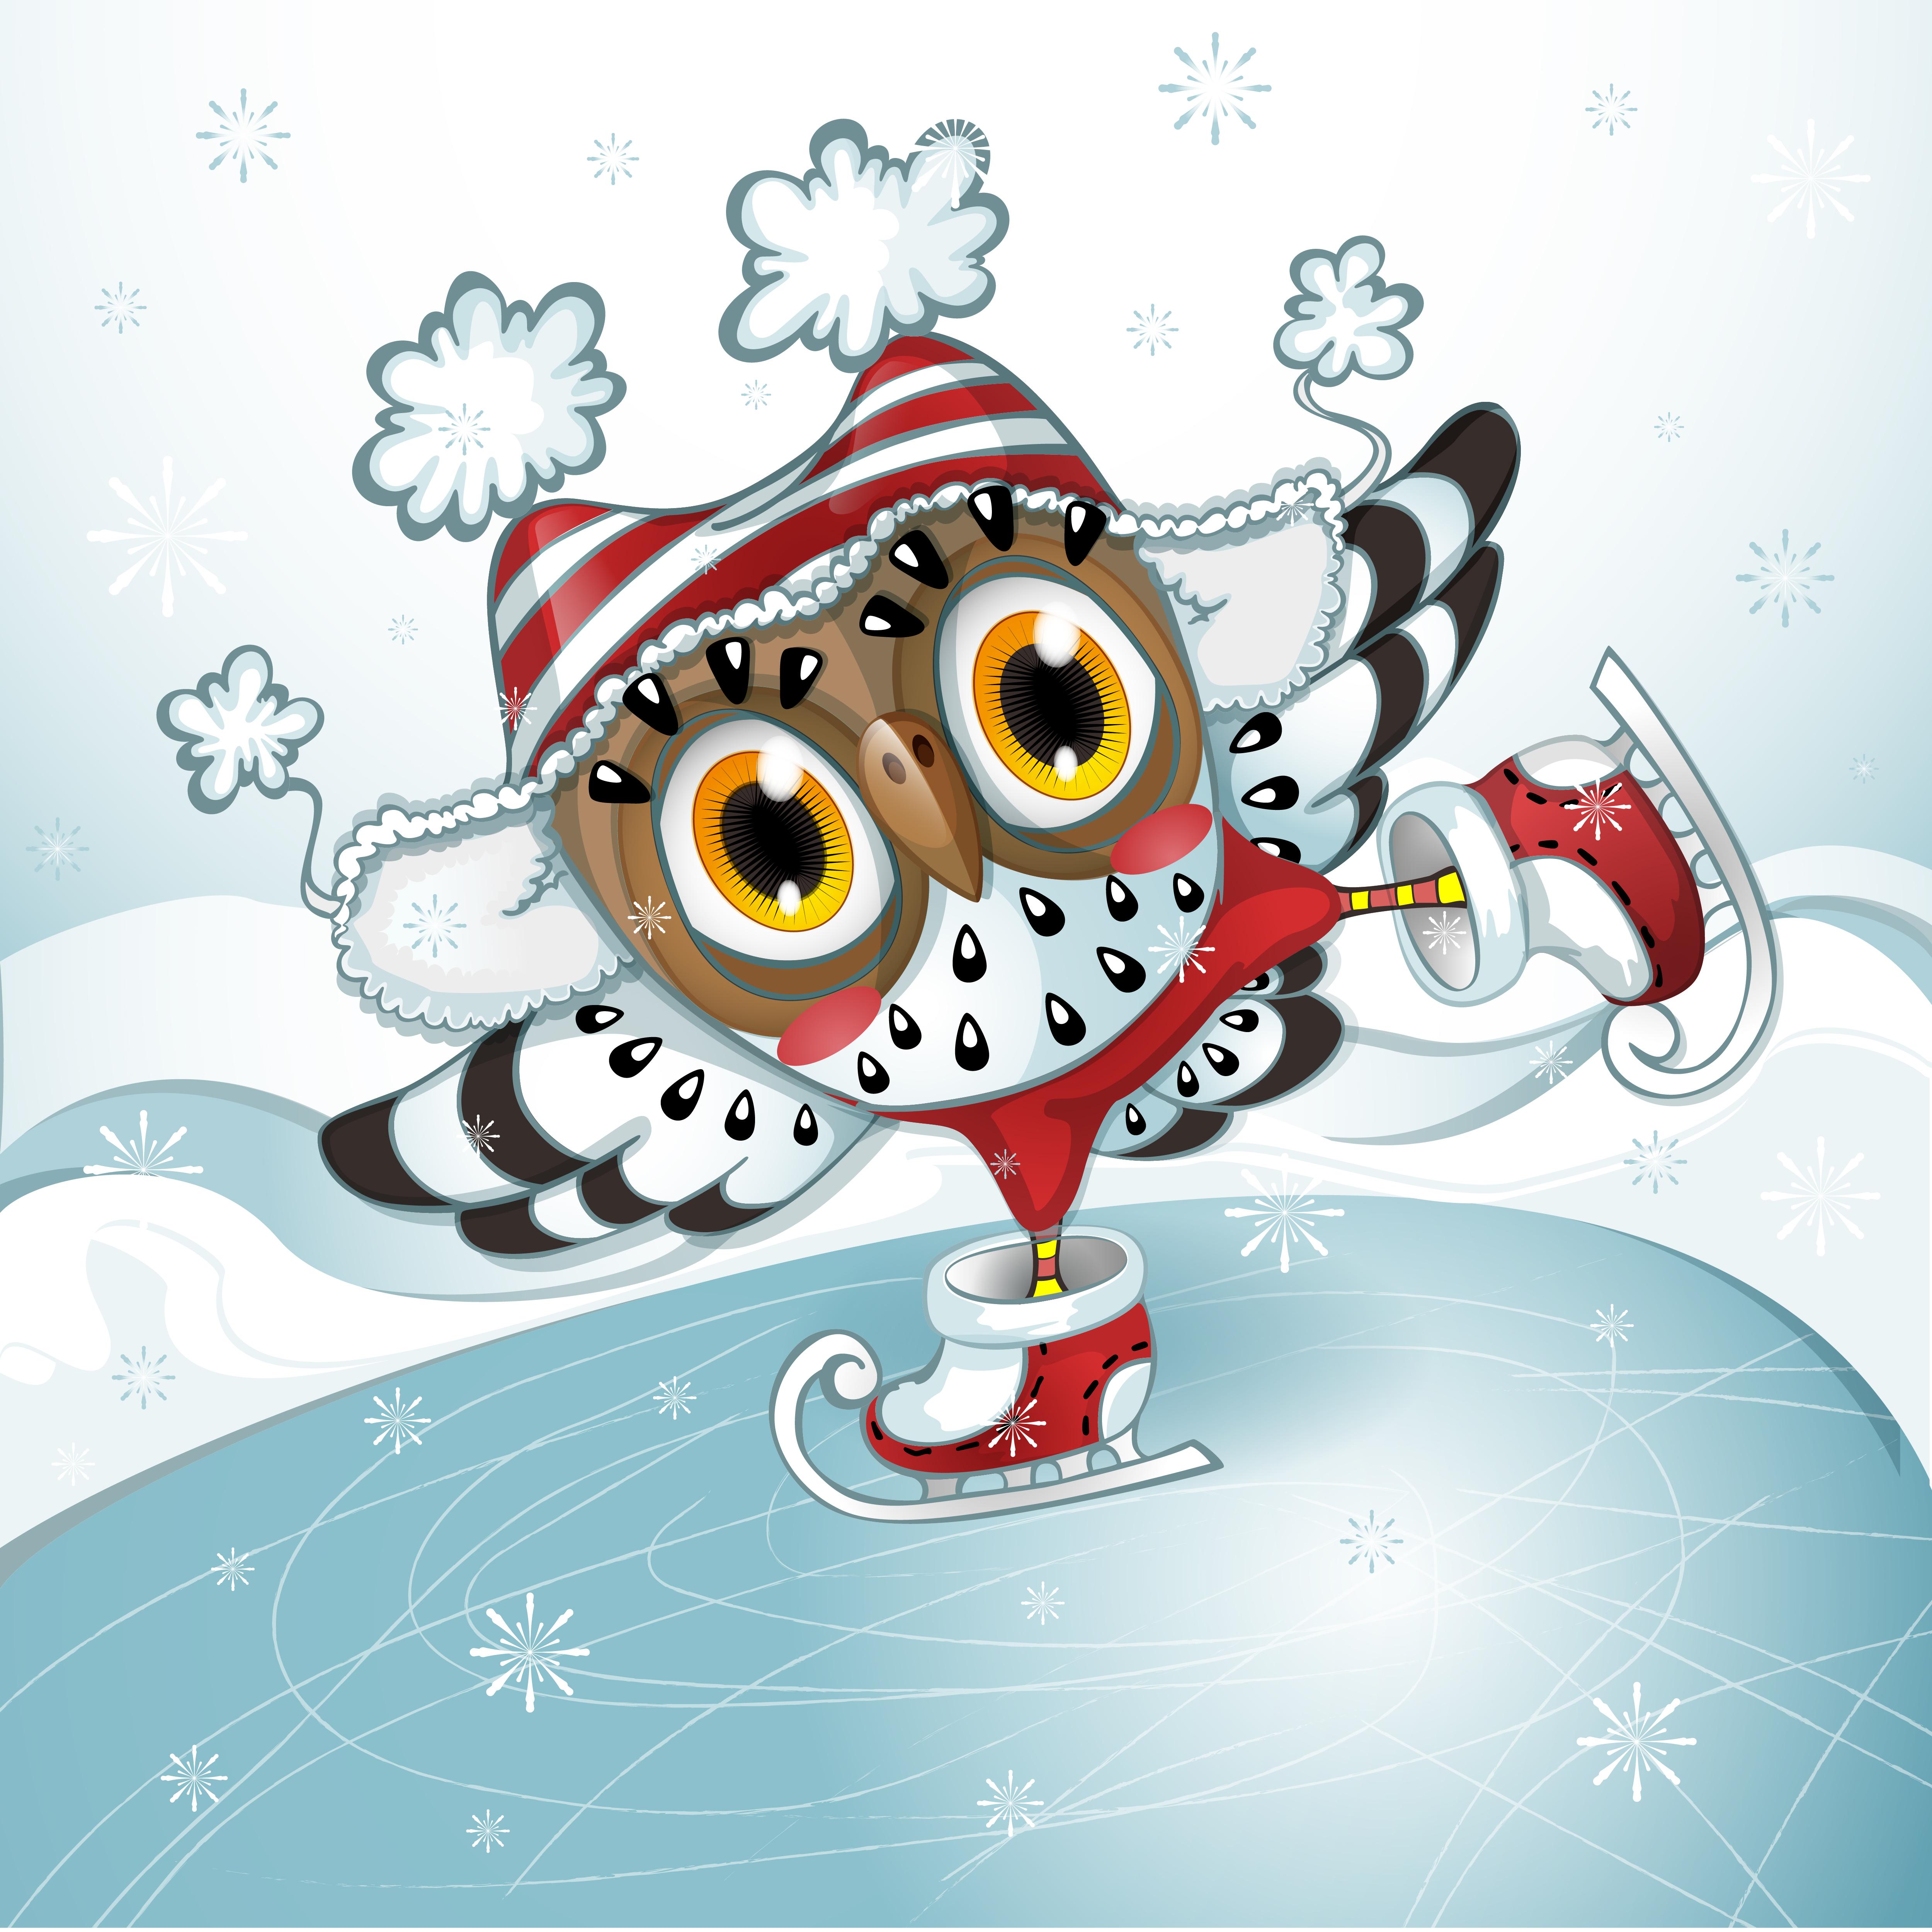 Созданный Ии Сова Зима - Бесплатное изображение на Pixabay - Pixabay